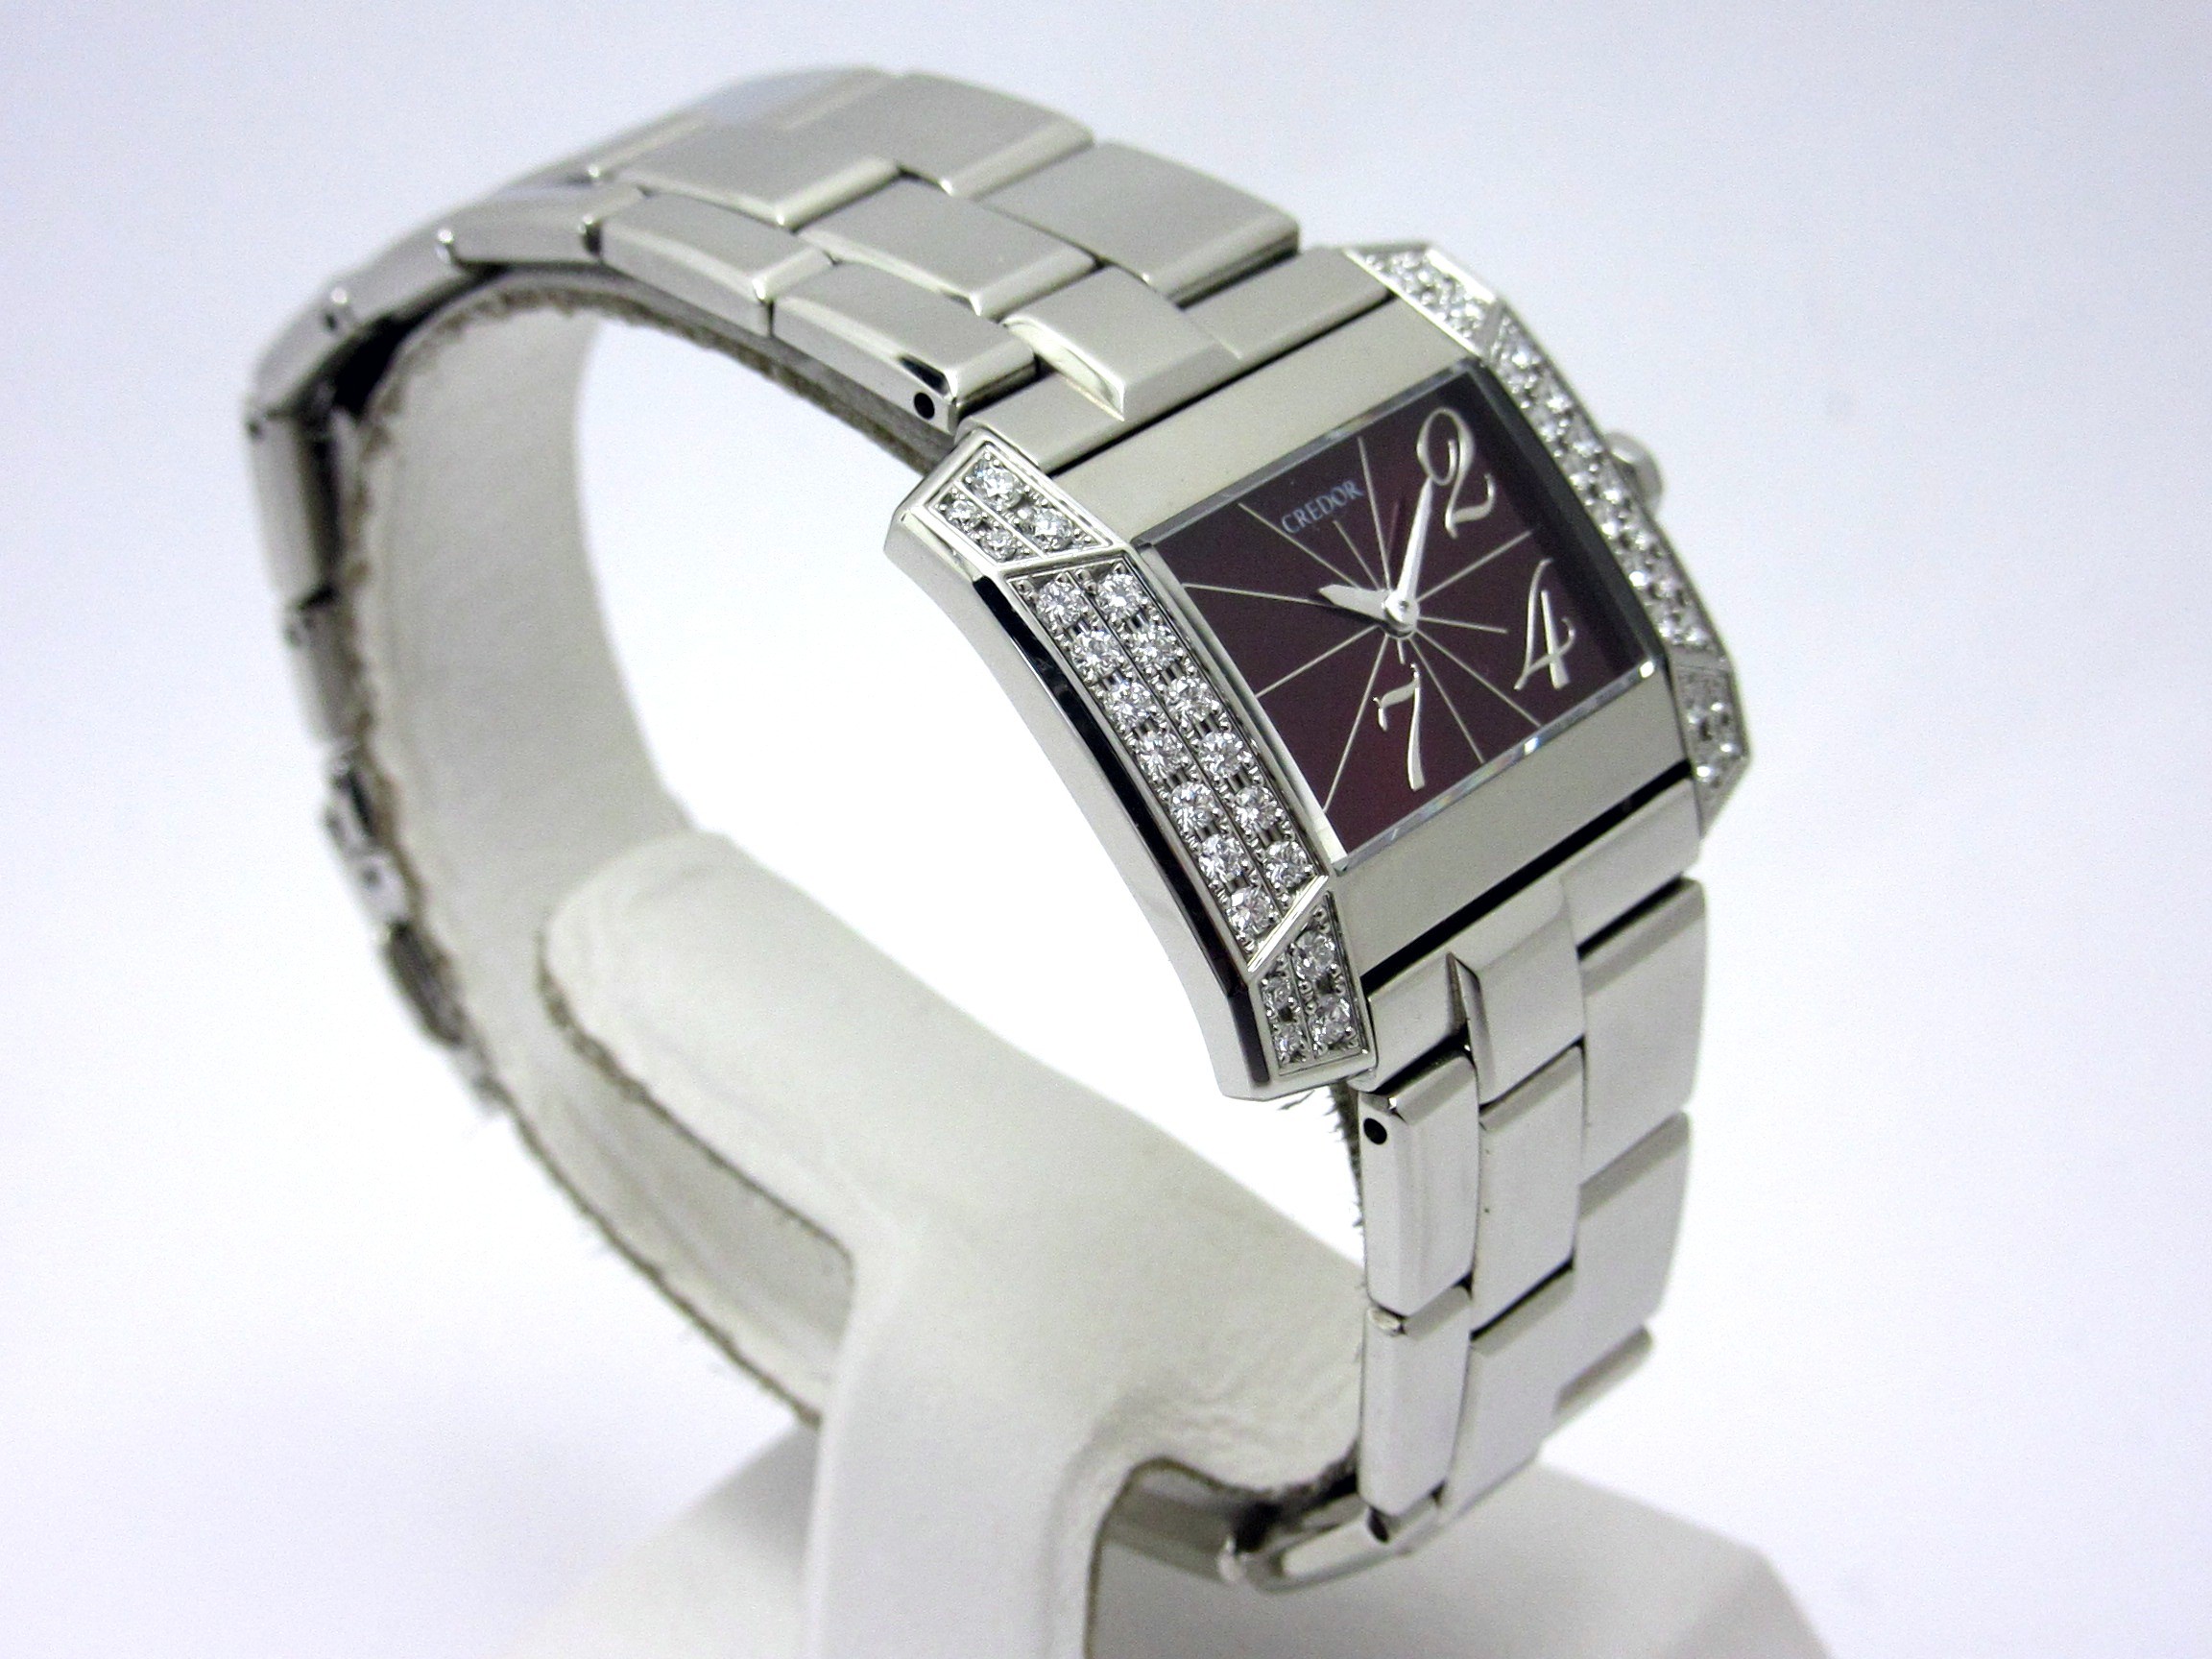 セイコー SEIKO クレドール ノードJ ダイヤベゼル GSTE915 レディース 腕時計 1E70 0BL0 シルバー 文字盤 クォーツ CREDOR VLP 90189639